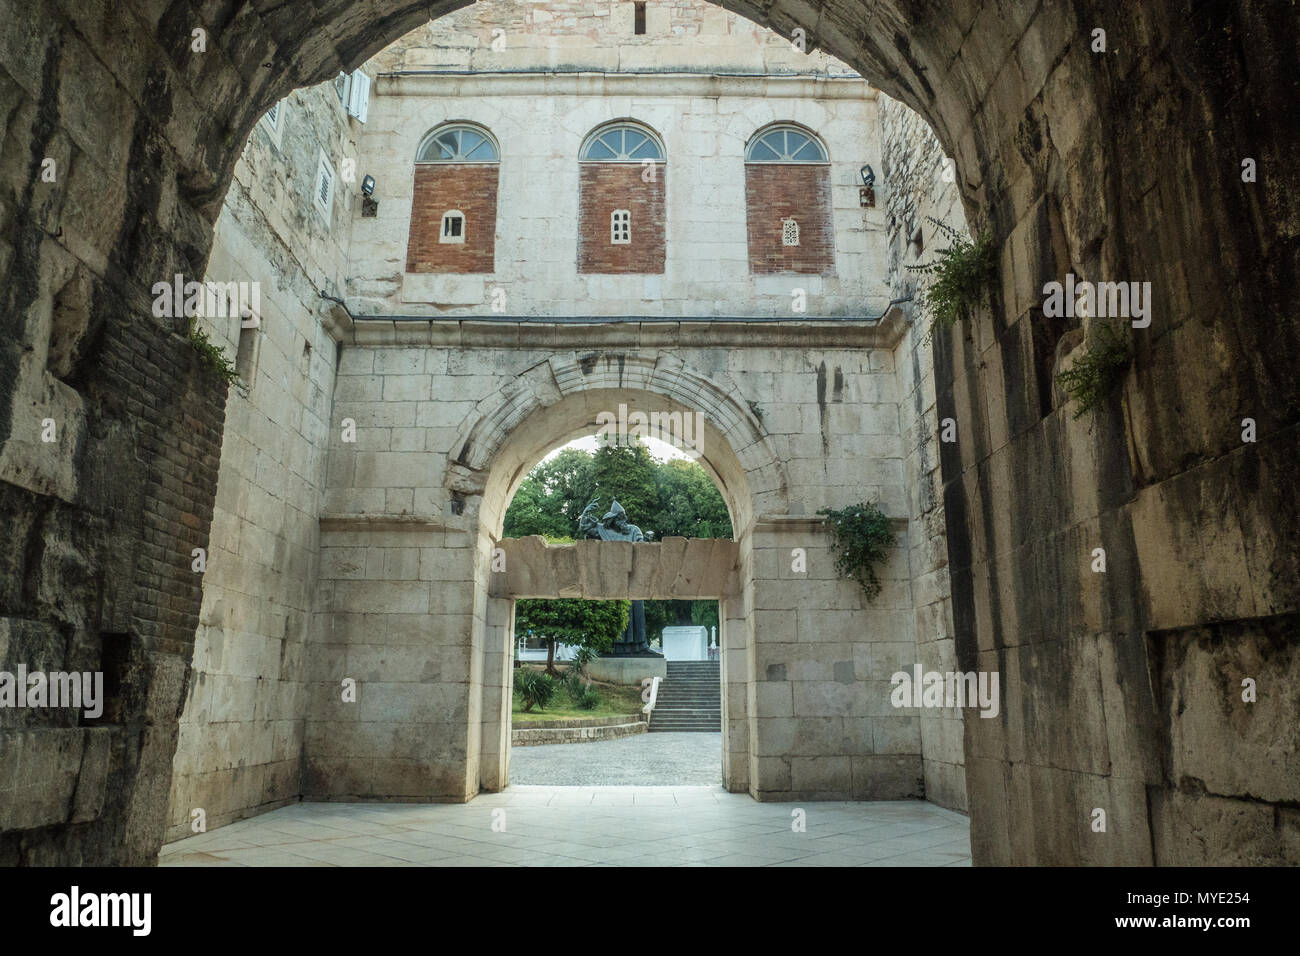 Vestiges de la muraille du palais de Dioclétien à Split qui fait maintenant partie de la vieille ville. Dioclétien était un empereur romain de 284 à 305 Ma. Banque D'Images